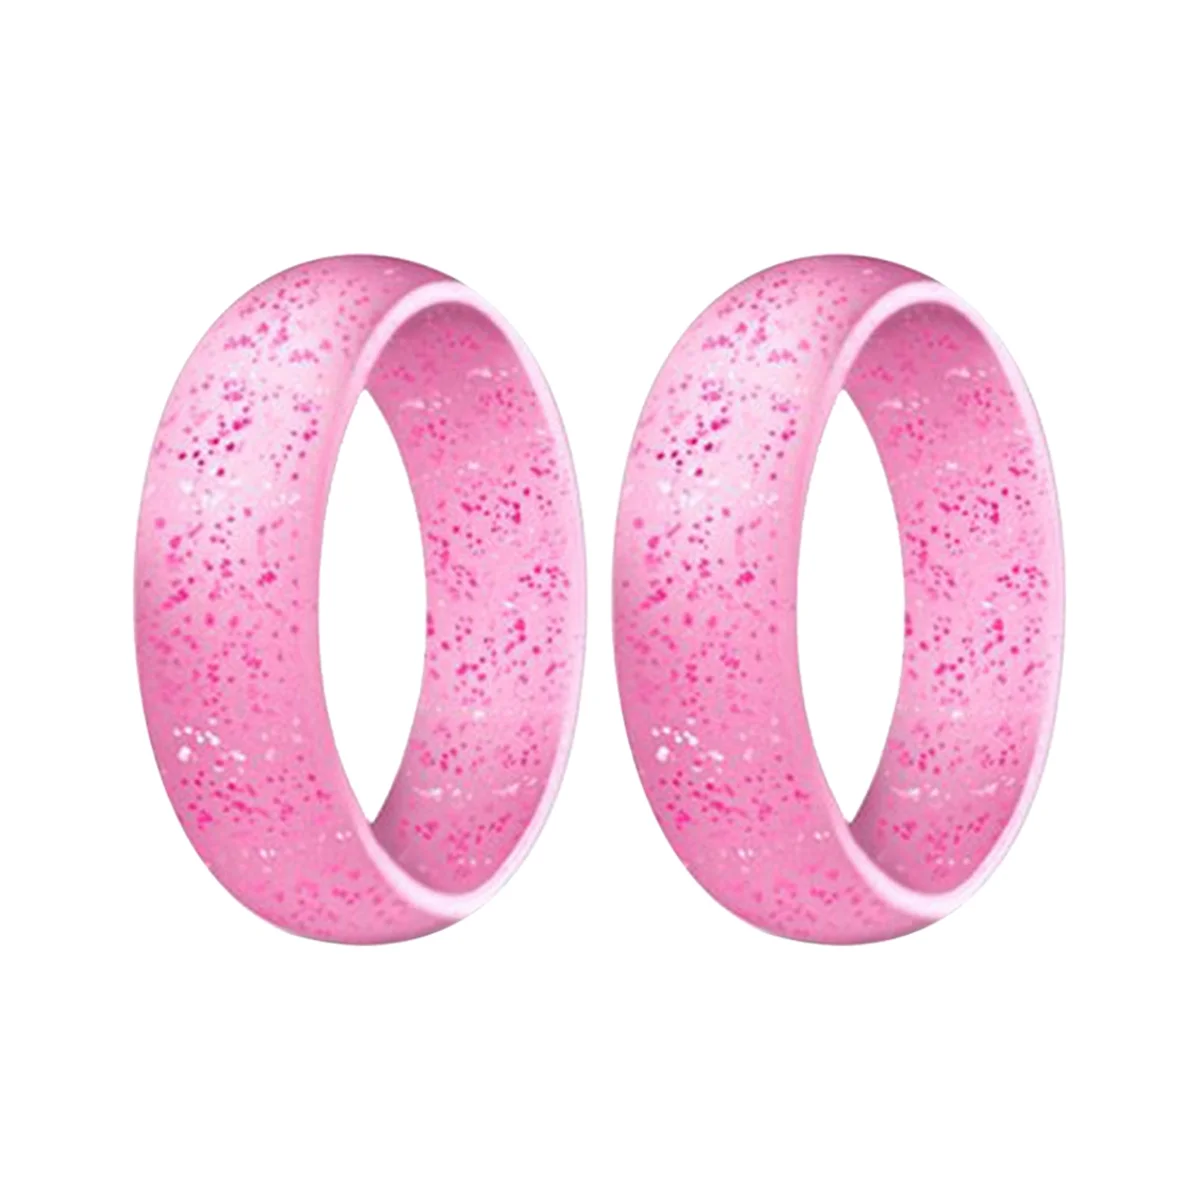 

Популярное женское Силиконовое обручальное кольцо 5,7 мм, экологичное розовое уличное Спортивное кольцо x2 6